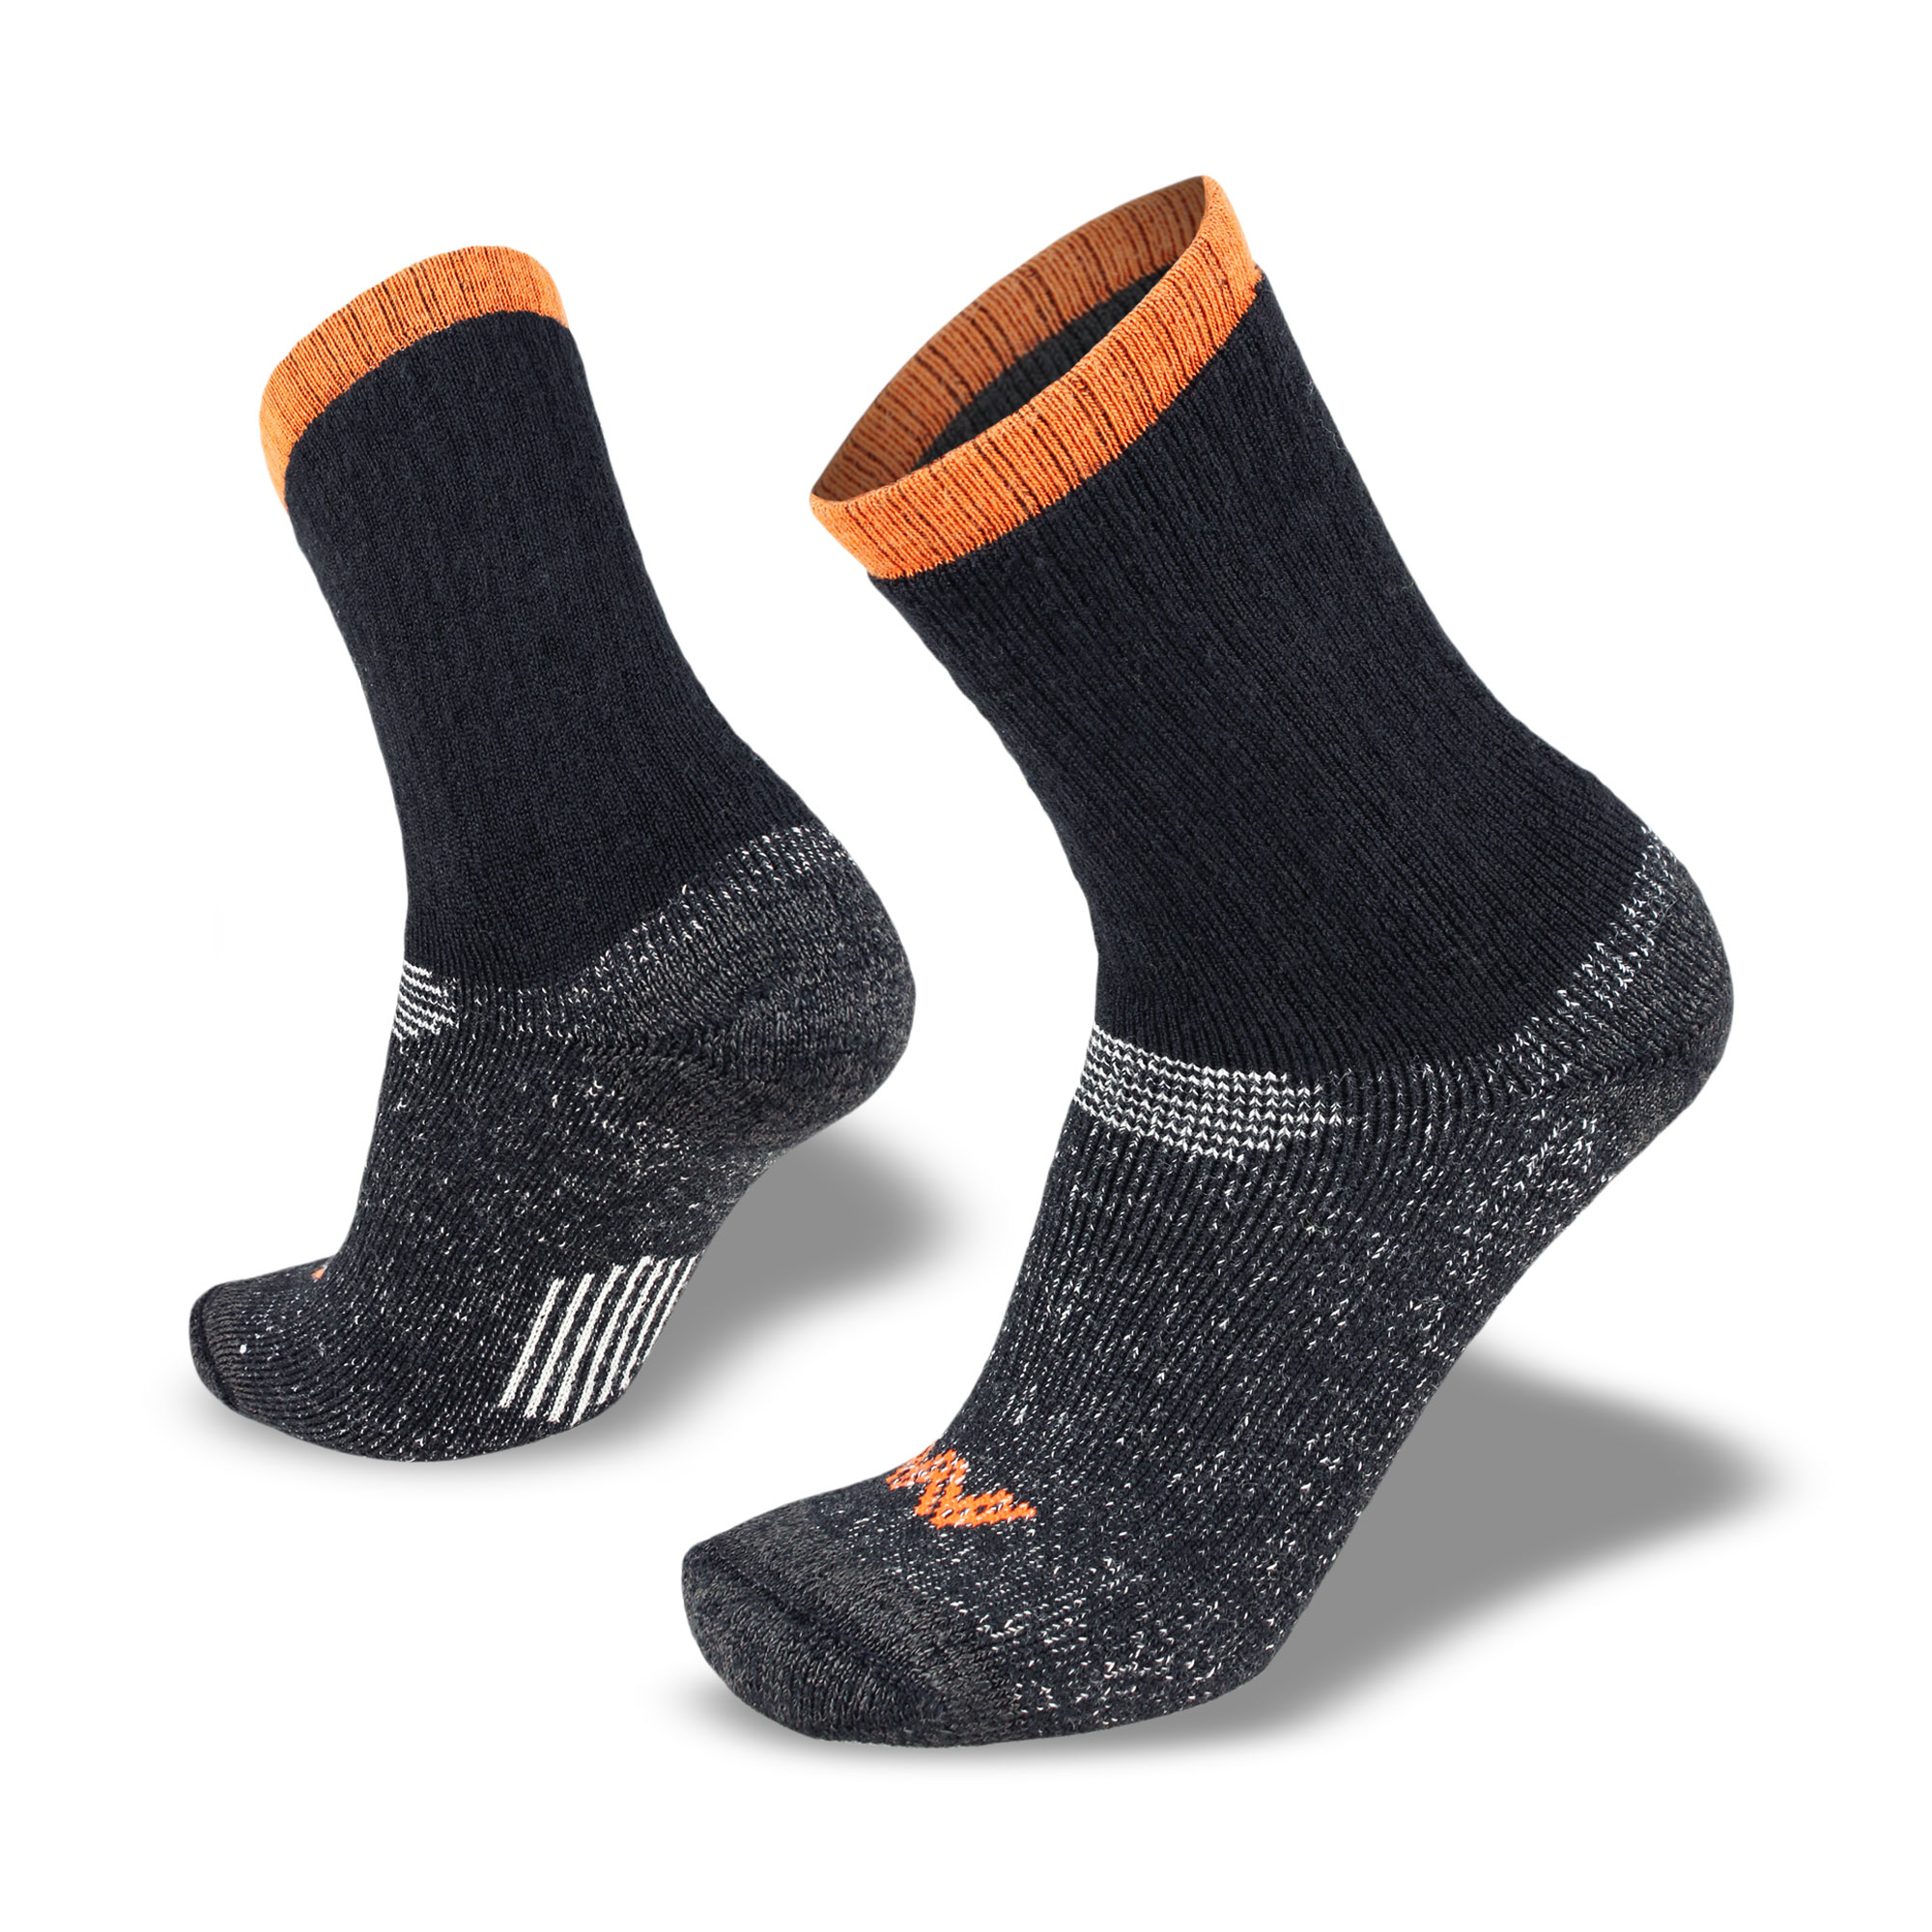 Men's Ground Force Extreme Merino Work Socks - Wilderness Wear